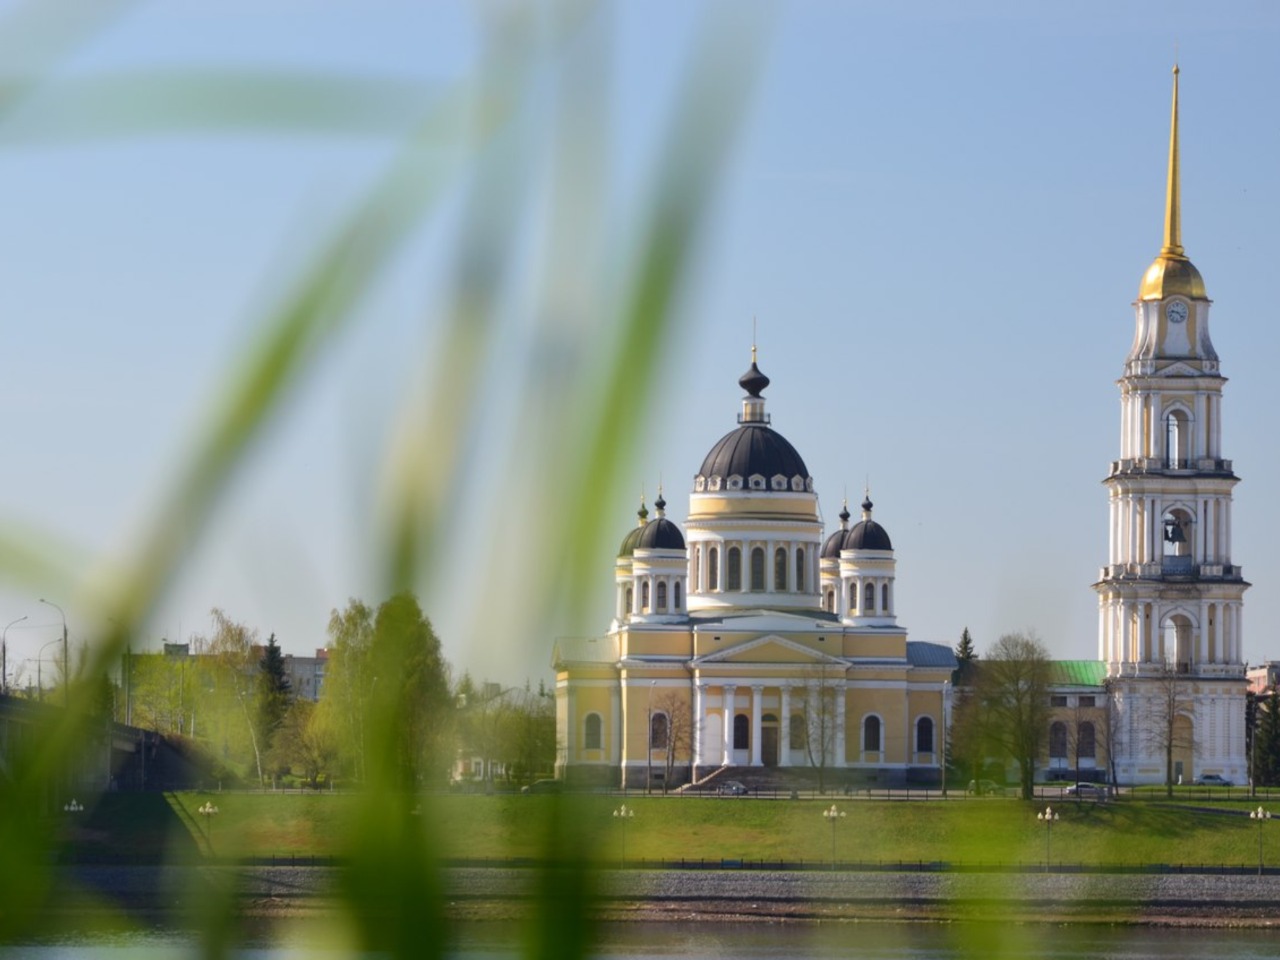 Едем в Рыбинск — без малого 1000-летний город! | Цена 7200₽, отзывы, описание экскурсии